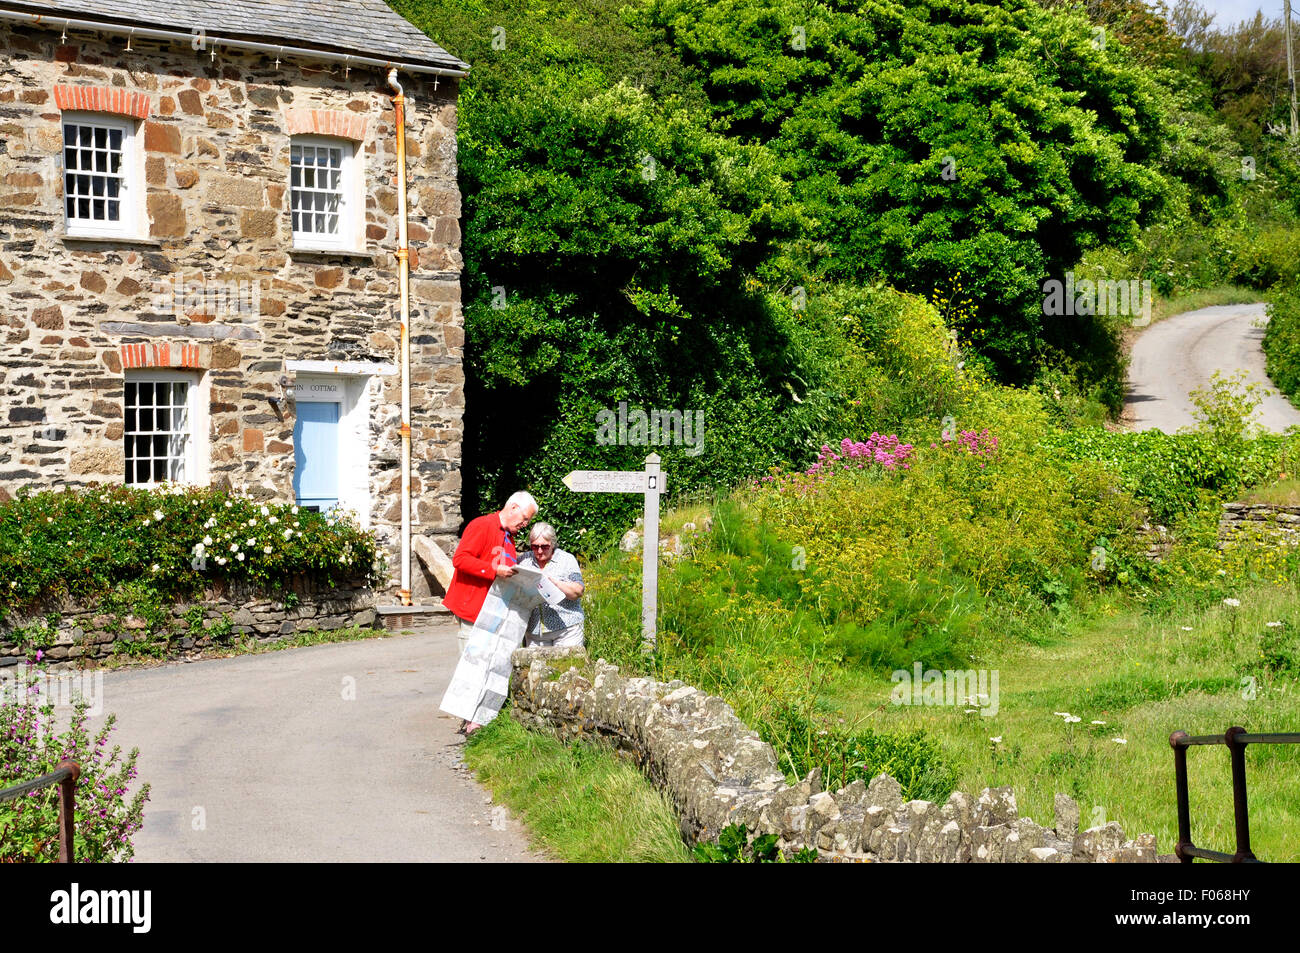 Nième Cornwall - route de campagne sinueuse - post - couple looking at a map - gîte près de par - meadow - mur de pierre - la lumière du soleil Banque D'Images